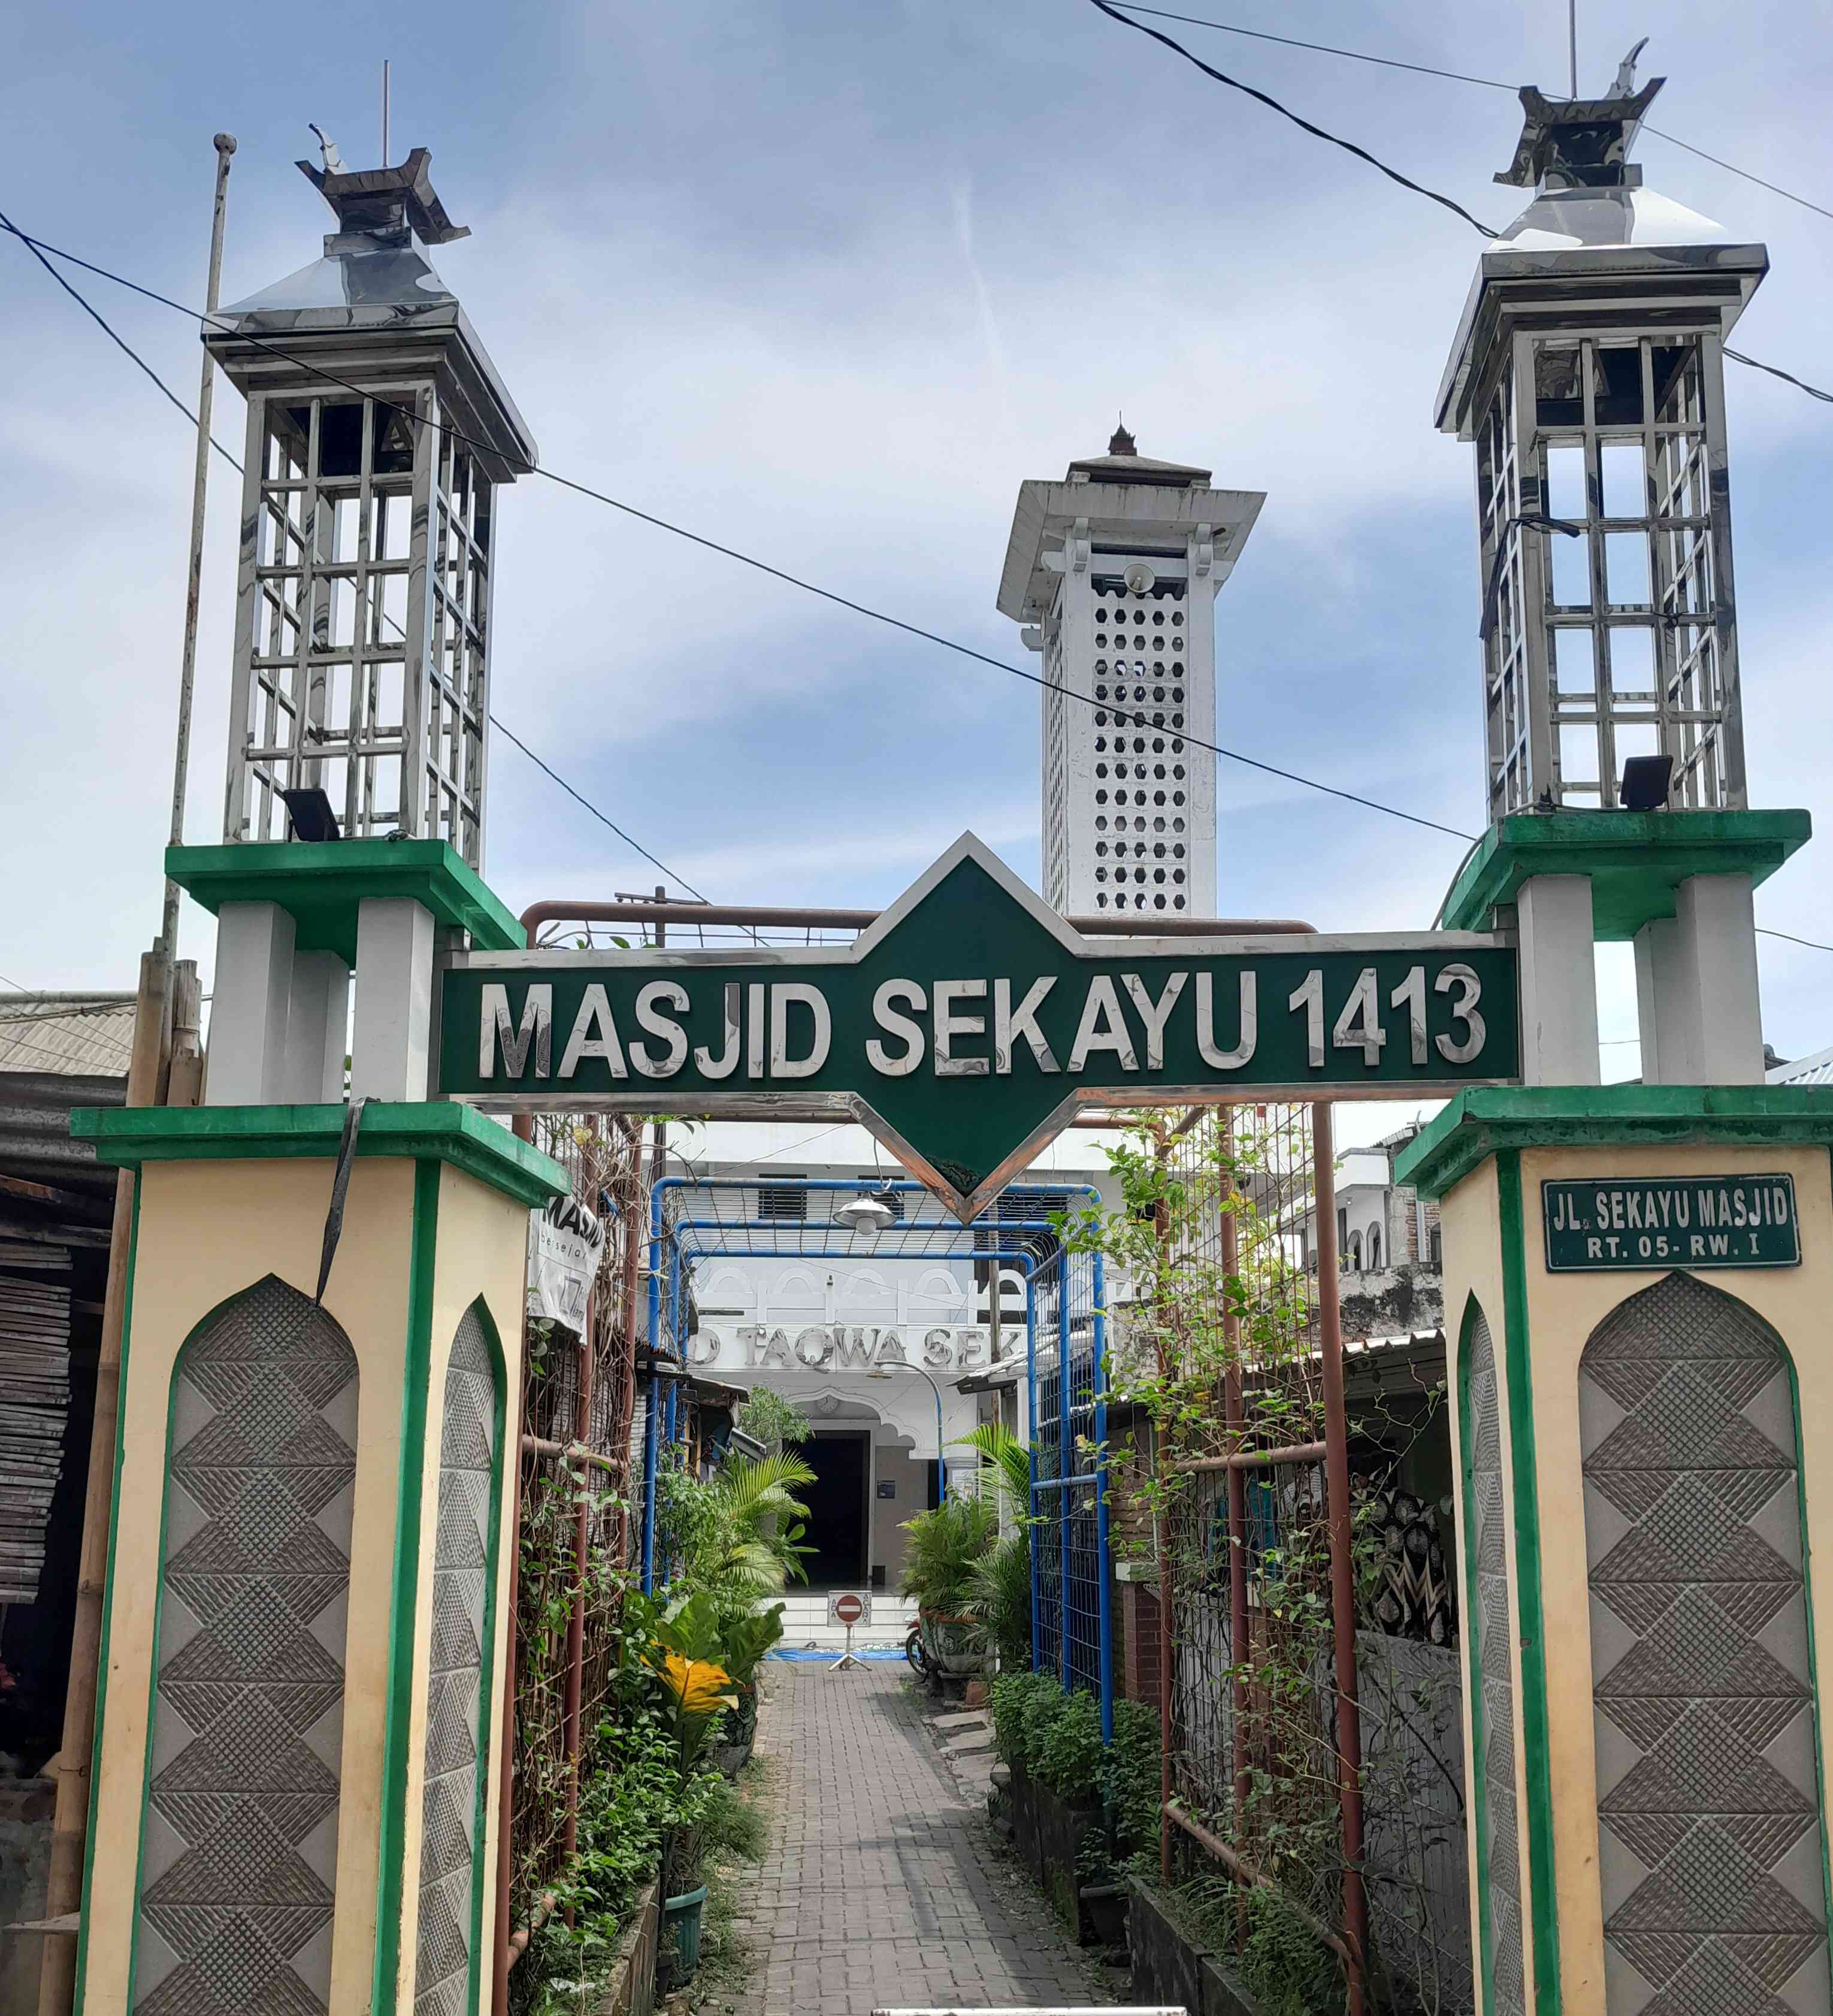 Masjid Sekayu, Wisata Sejarah dan Religi di Pusat Kota Semarang